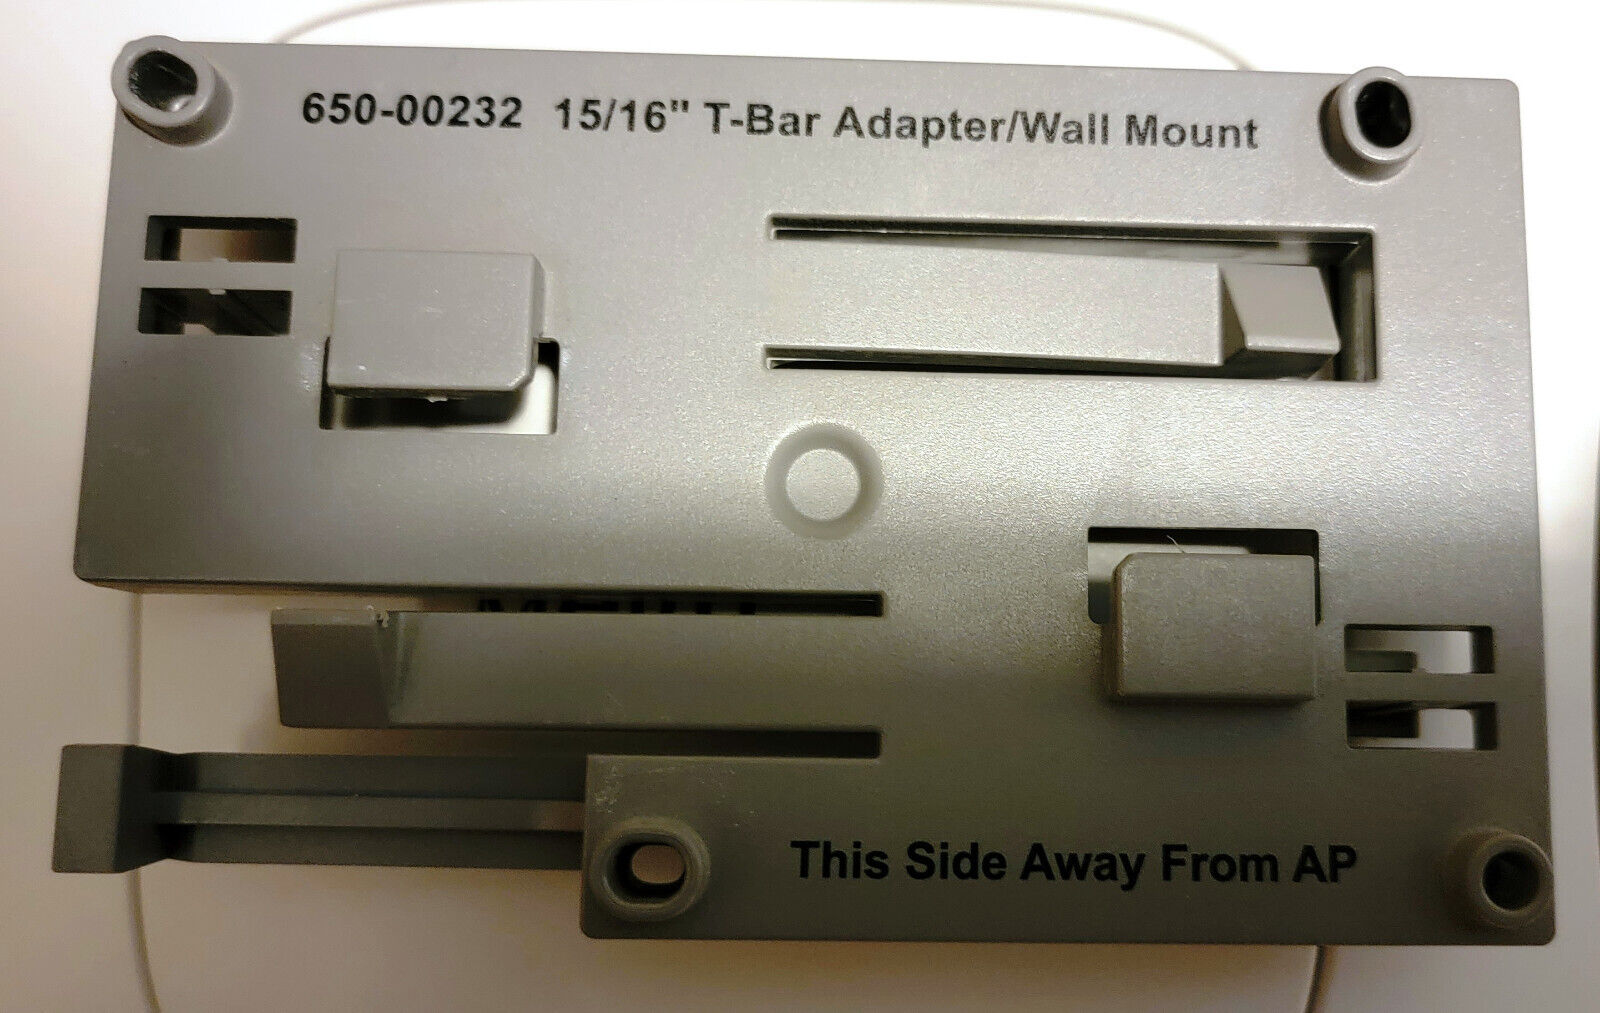 Fortinet Meru Access Point AP 650-00232 15/16” T-bar Adapter/Wall Mount Bracket